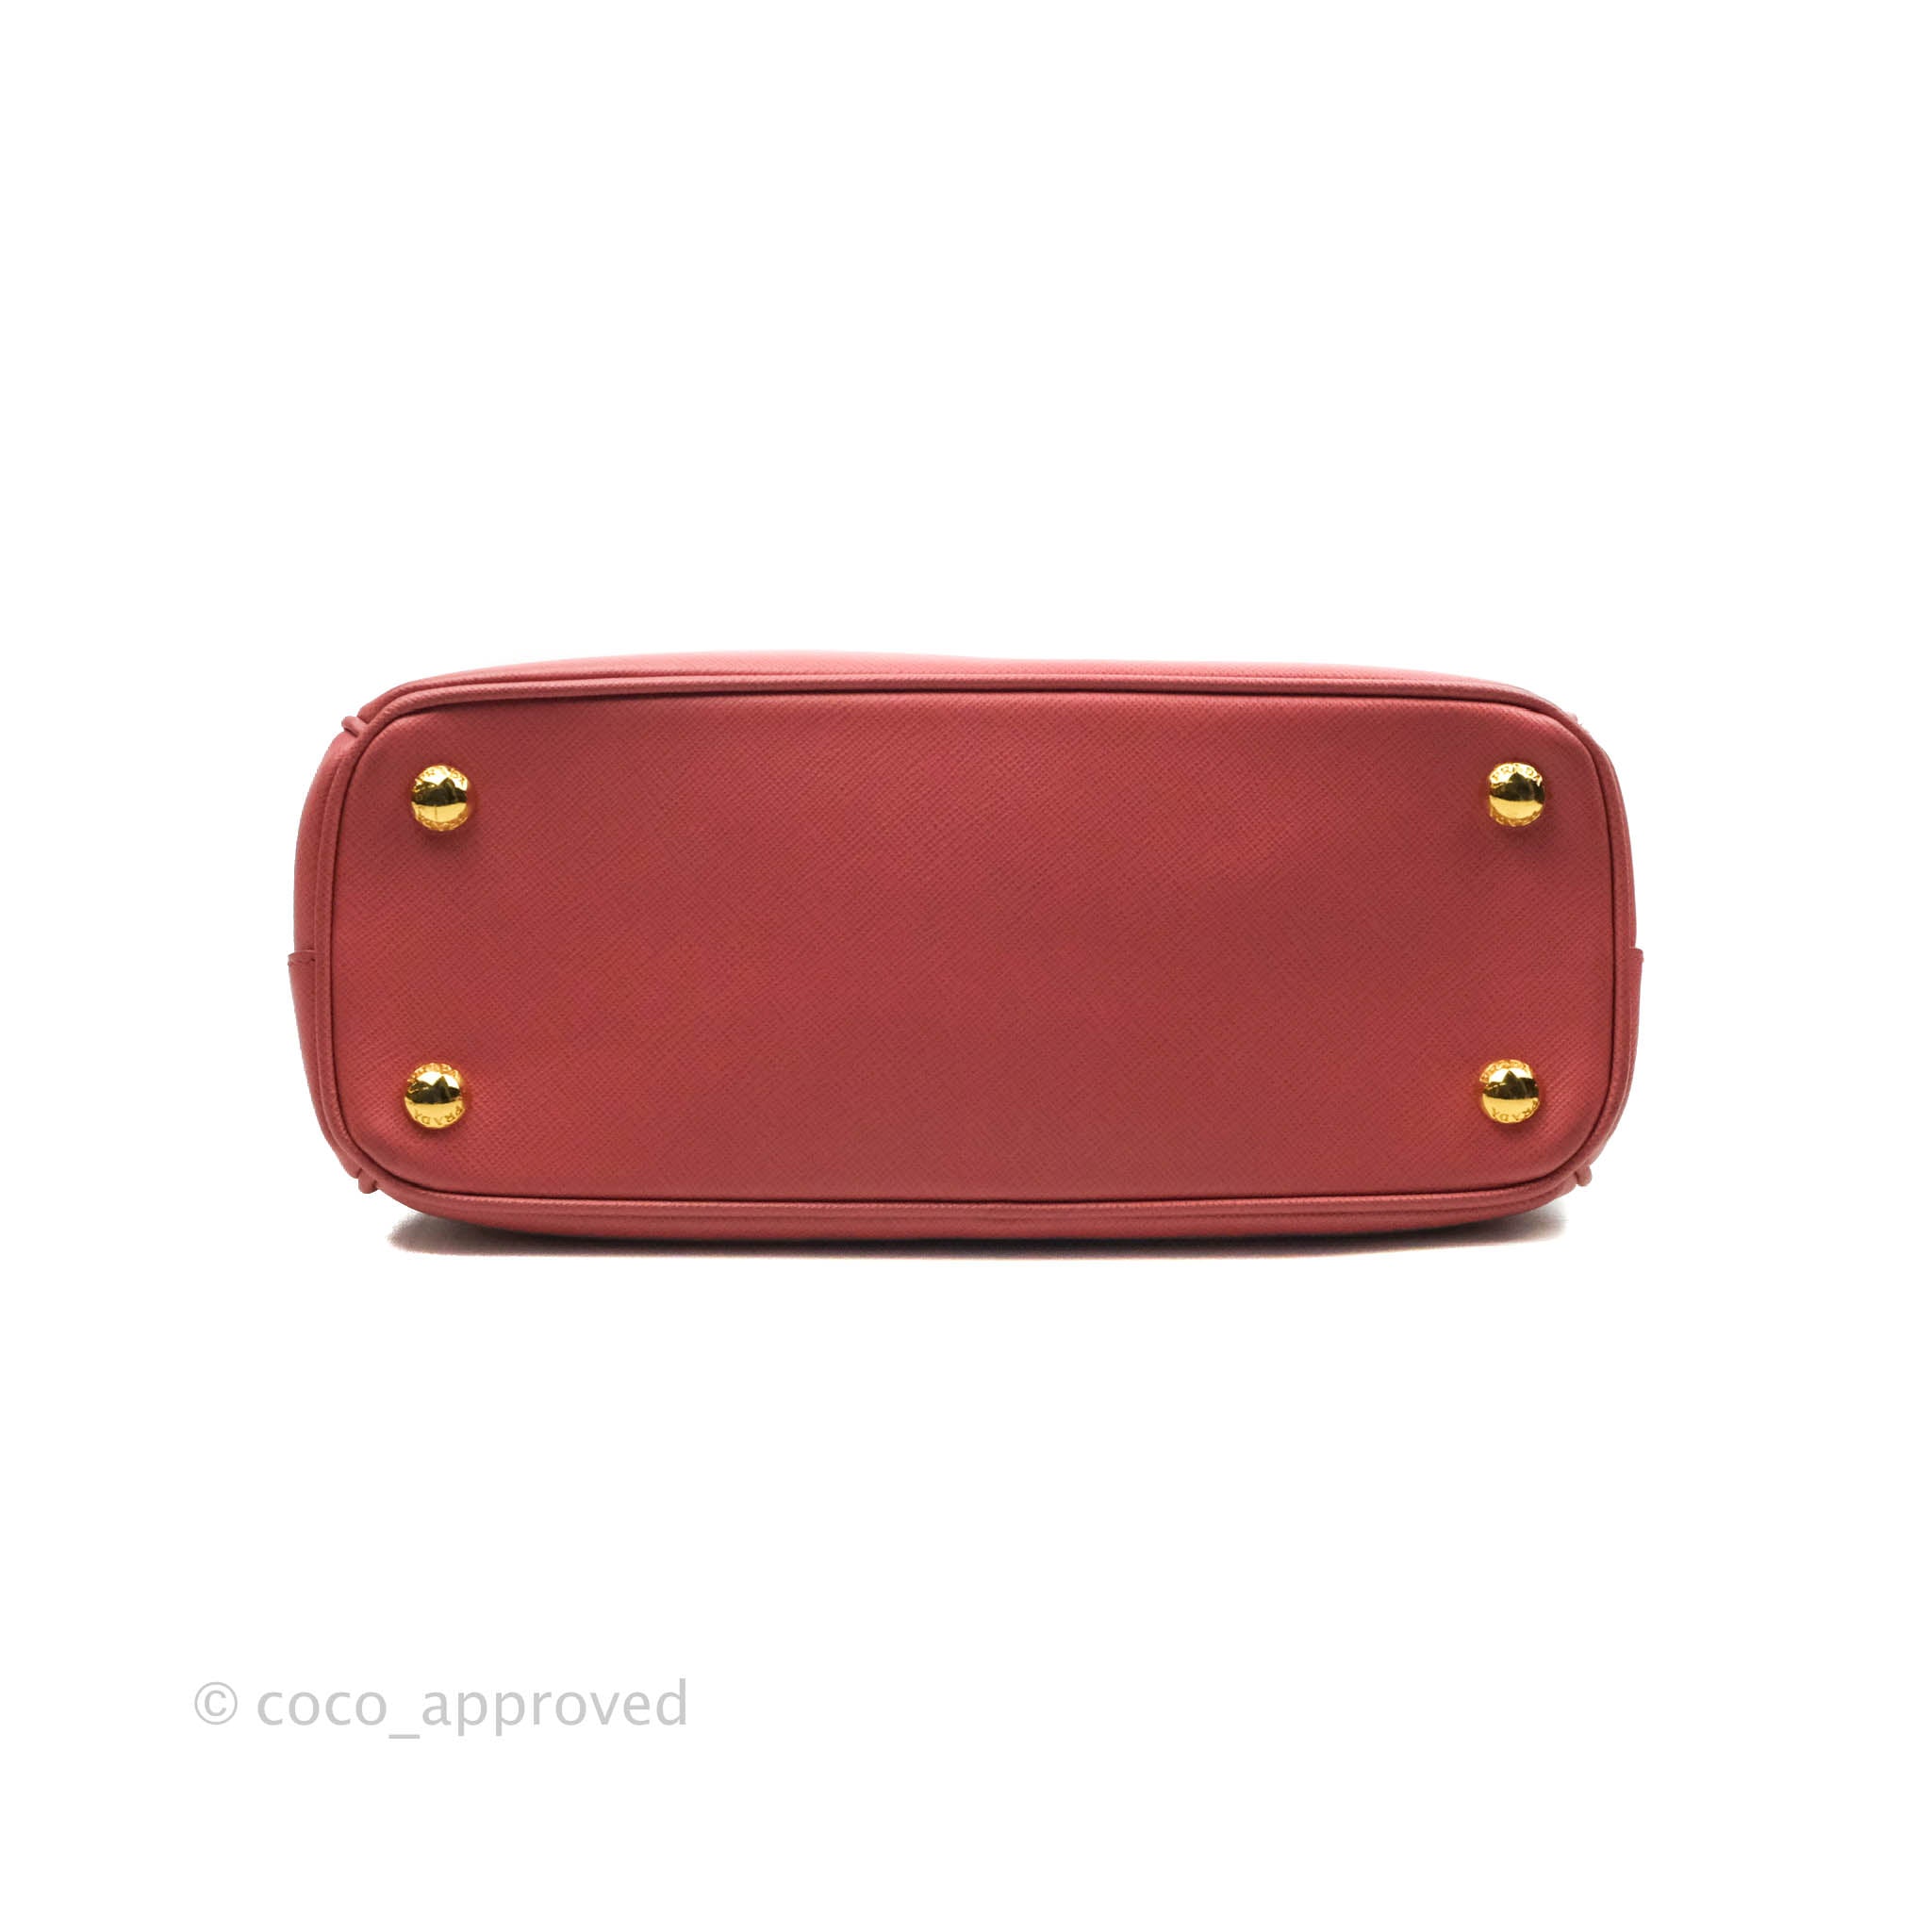 Prada Saffiano Mini Bag Reference Guide - Spotted Fashion